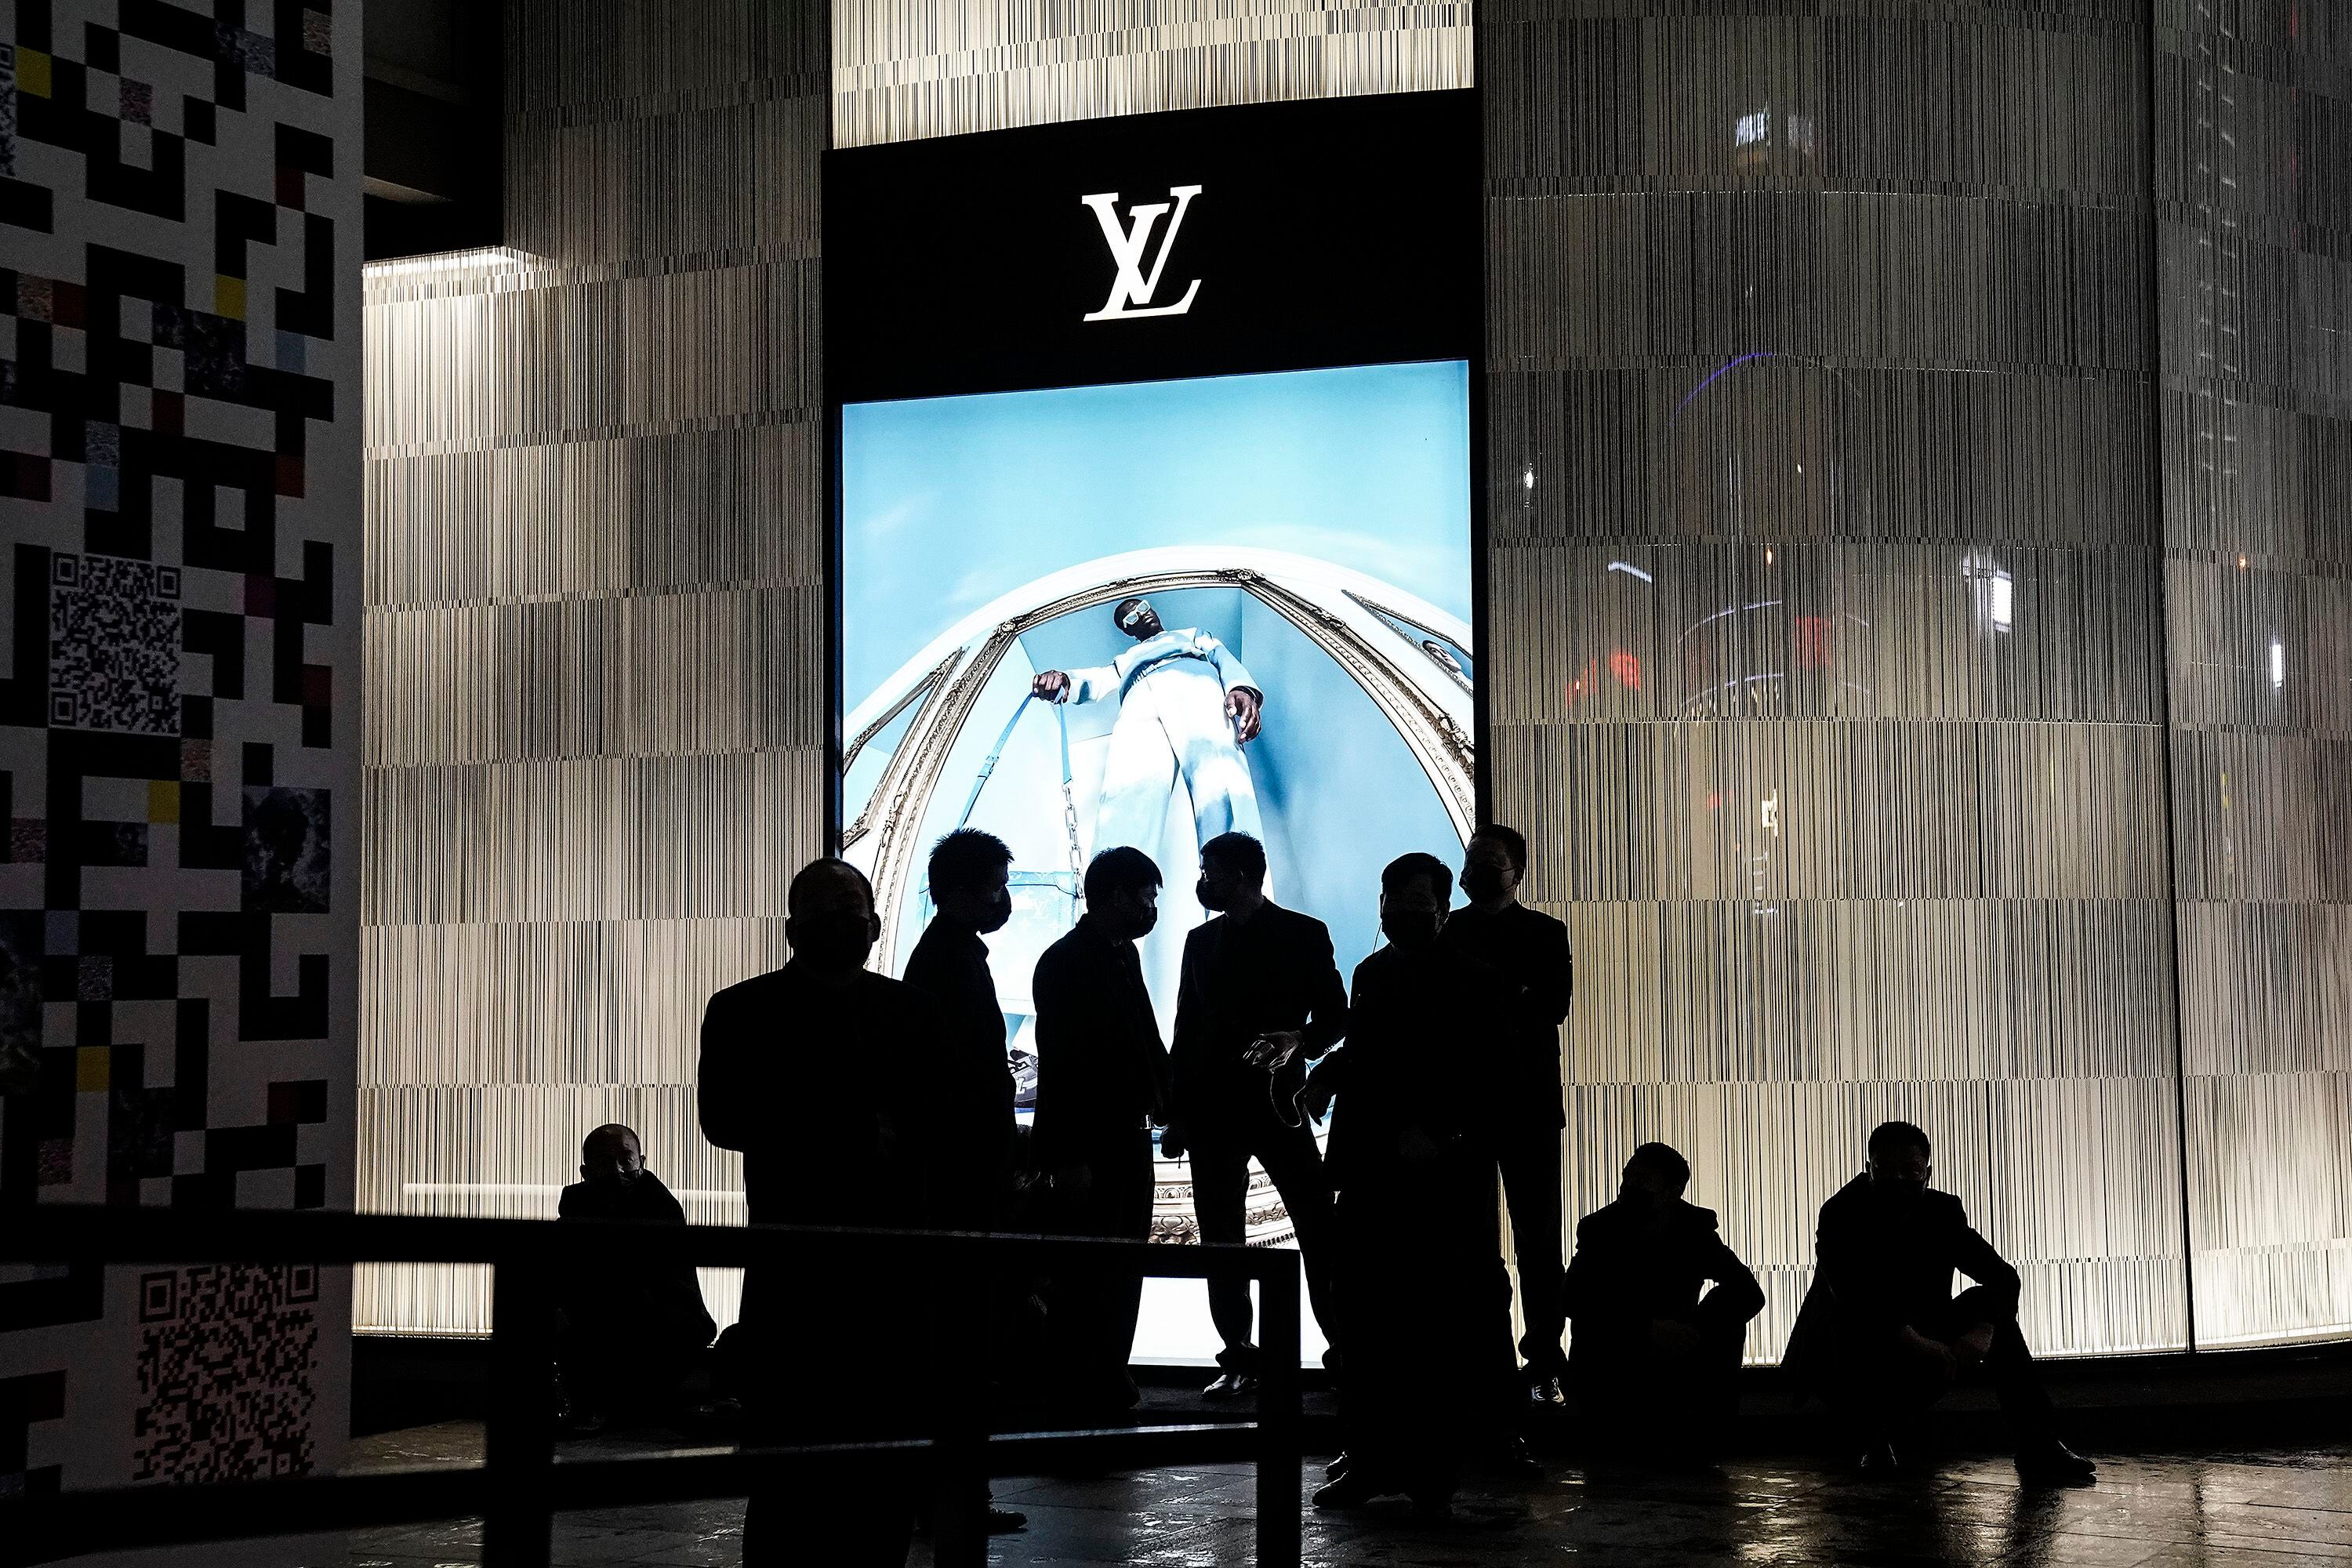 Louis Vuitton y Yayoi Kusama anticipan una nueva colaboración (y es  historia de arte y moda) – PuroDiseño